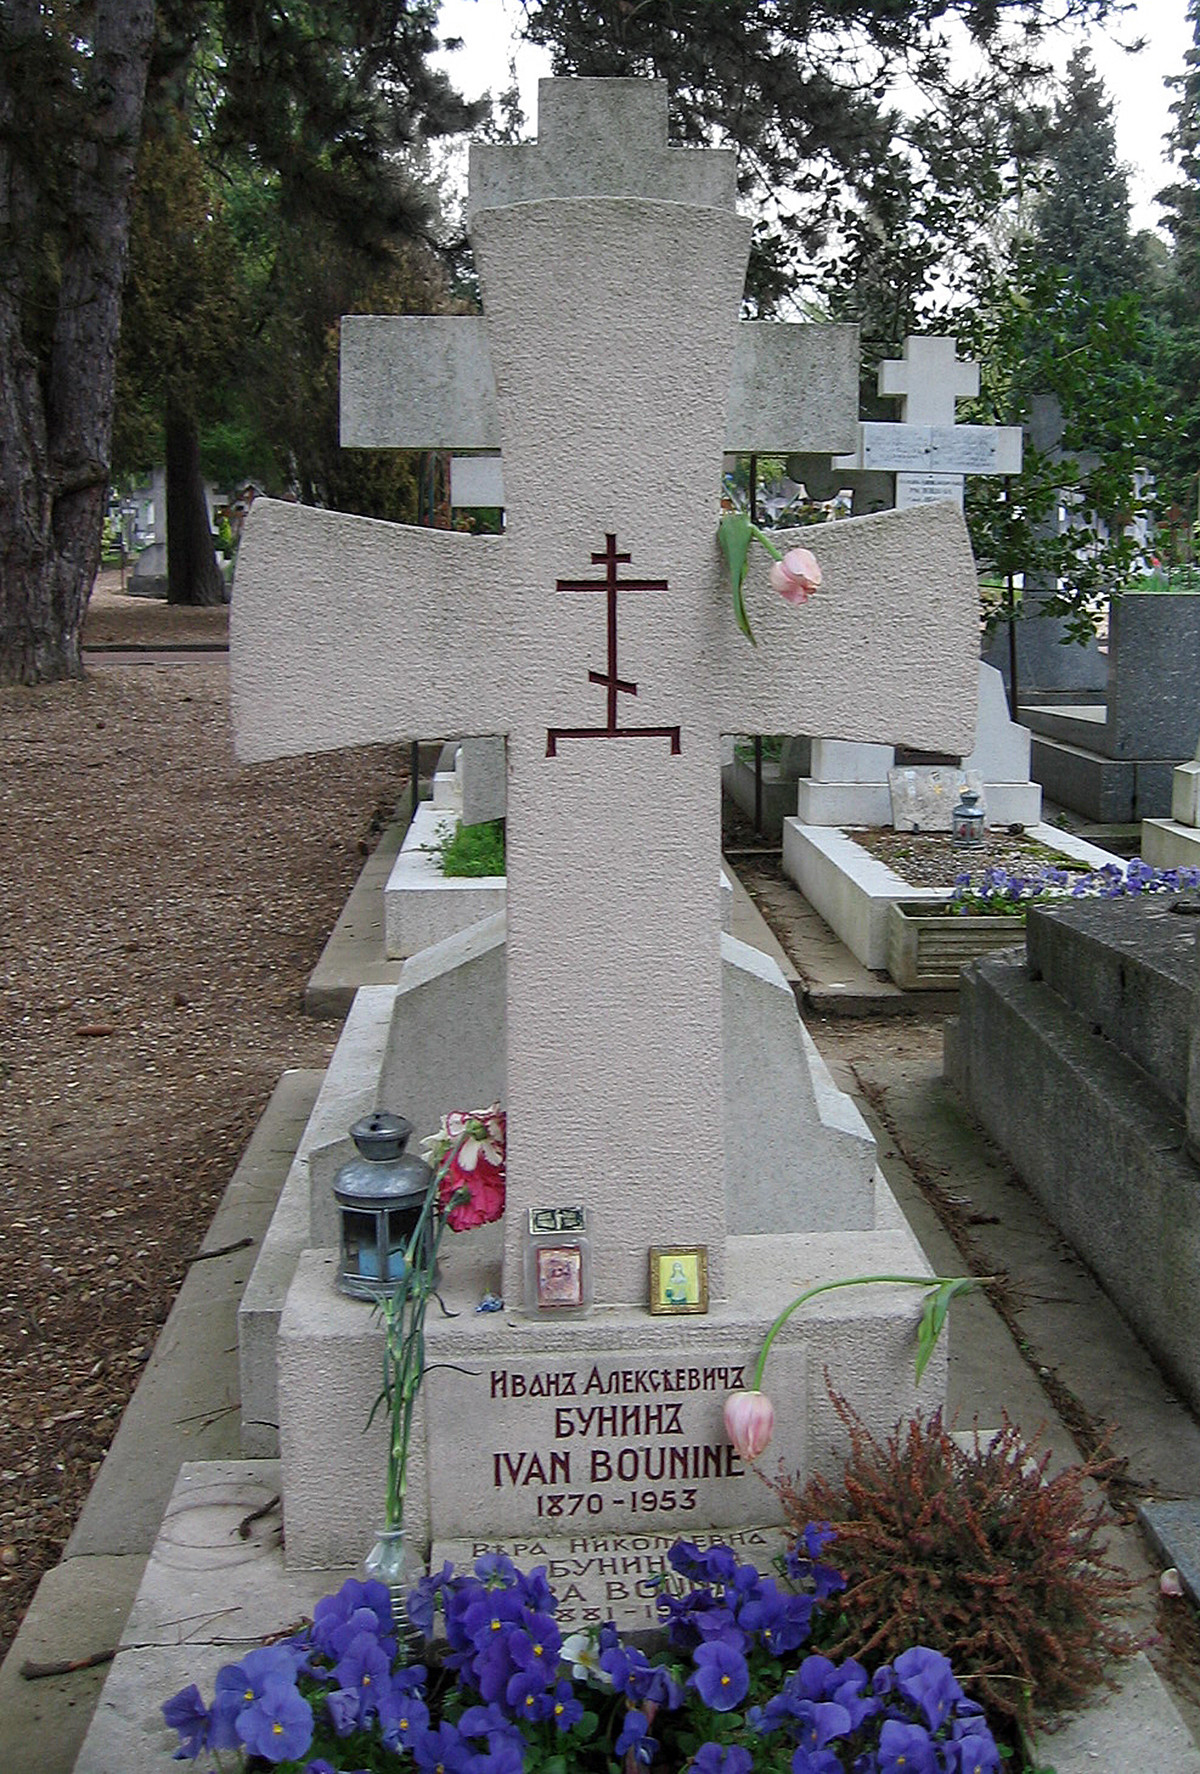  Ivan Bunin's grave at Sainte-Geneviève-des-Bois cemetery in Paris